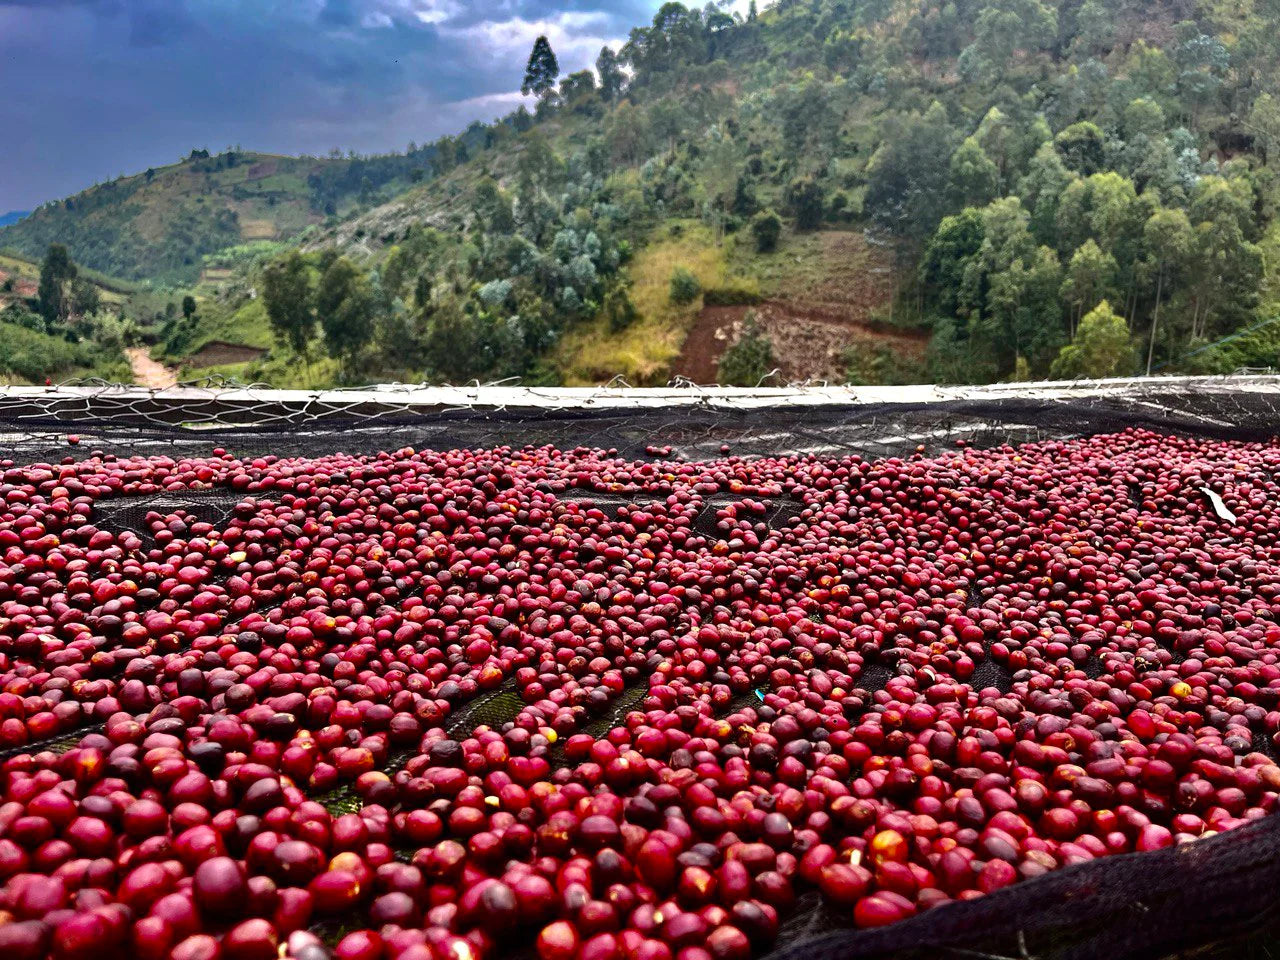 Roasted - Rwanda Kivu (Coffee of the Week)